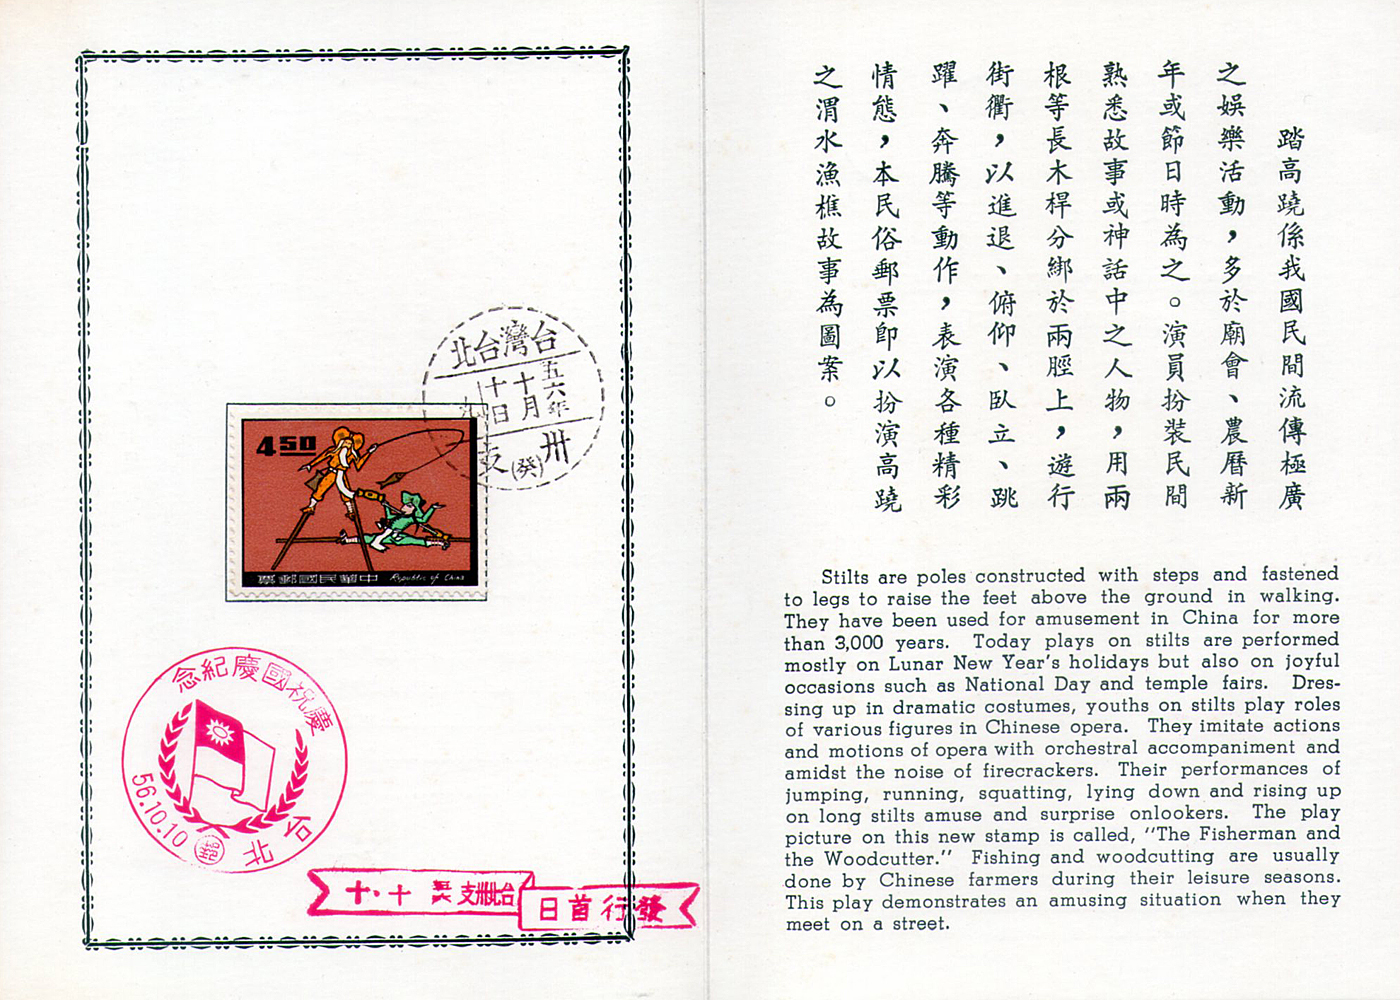 民俗56年版郵票